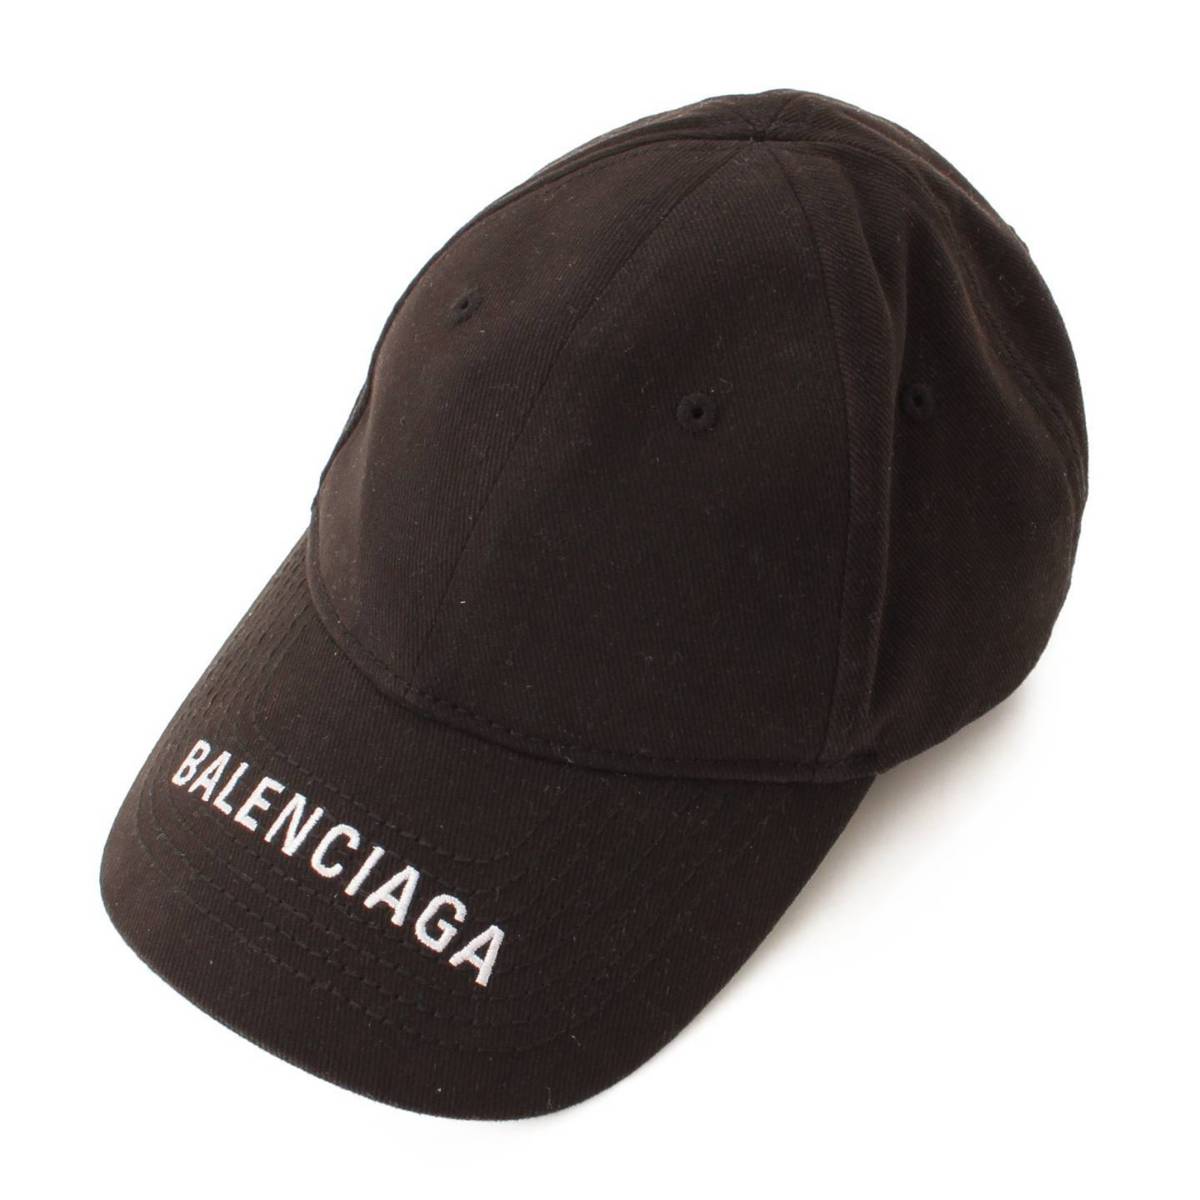 バレンシアガ(Balenciaga) ロゴ ベースボールキャップ 帽子 531588 ブラック L